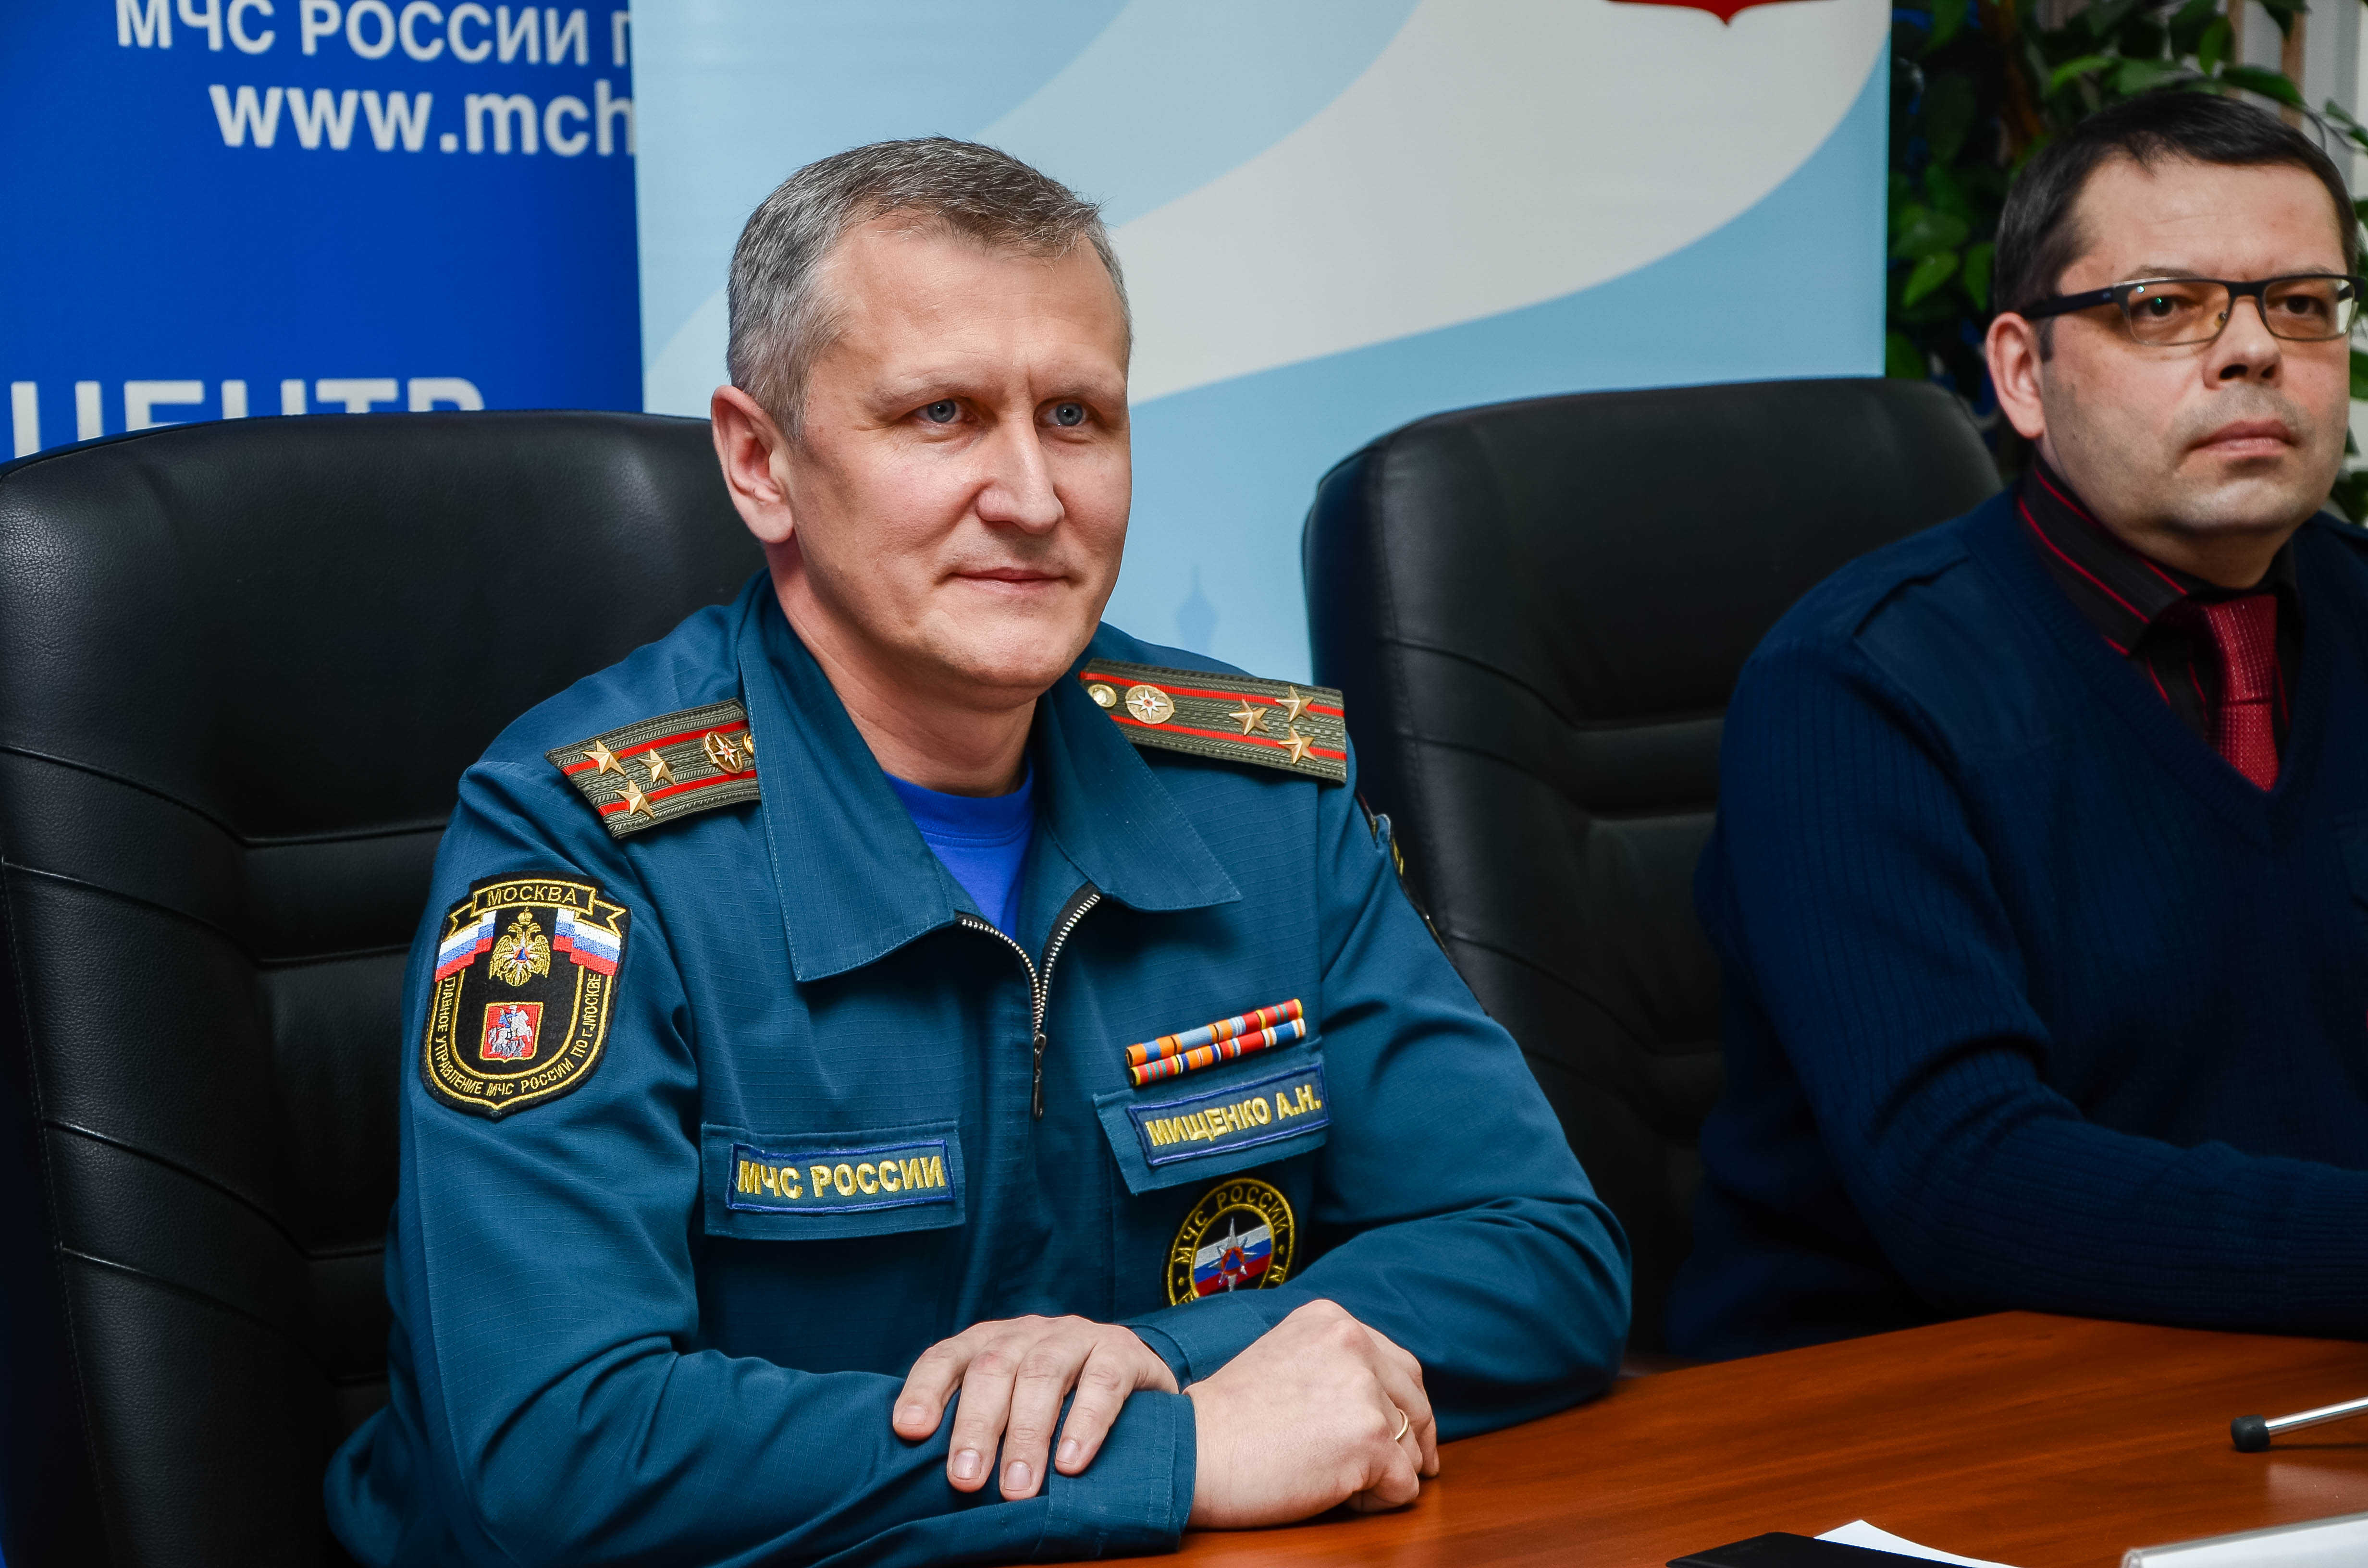 Романенко Михаил Николаевич генерал МЧС